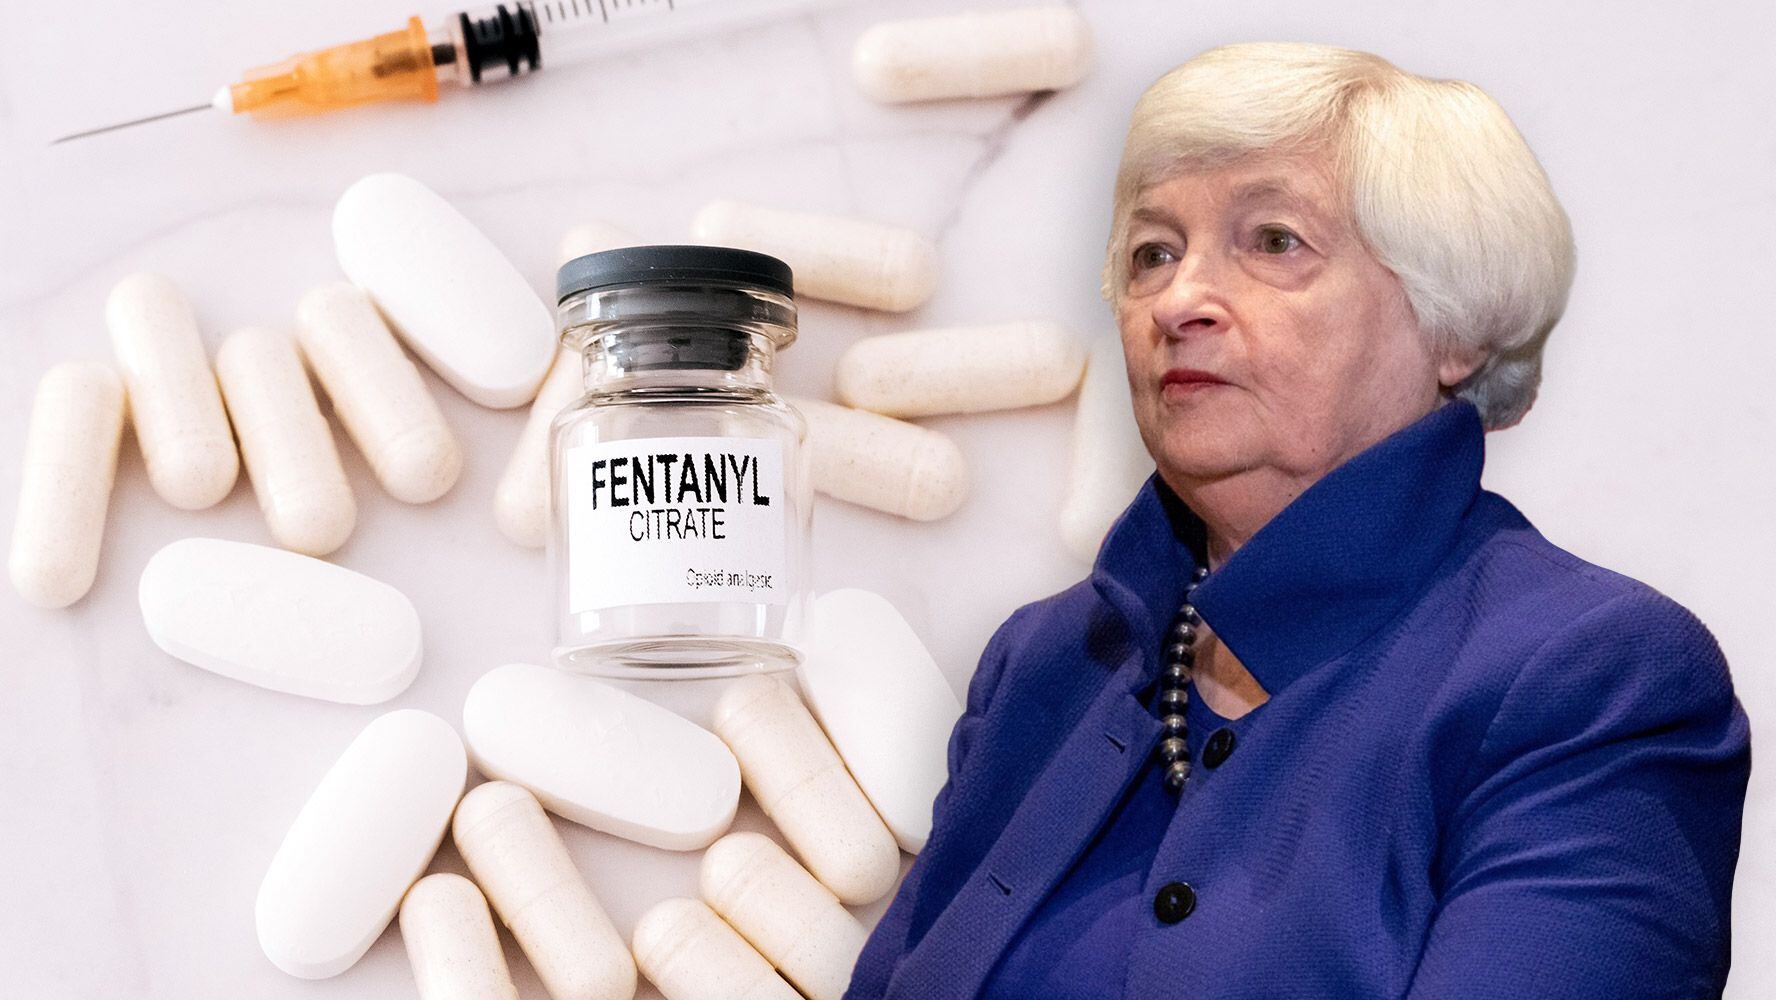 Deuda ‘mortal’: Crisis de opioides cuesta 1.5 billones de dólares a EU, afirma Yellen